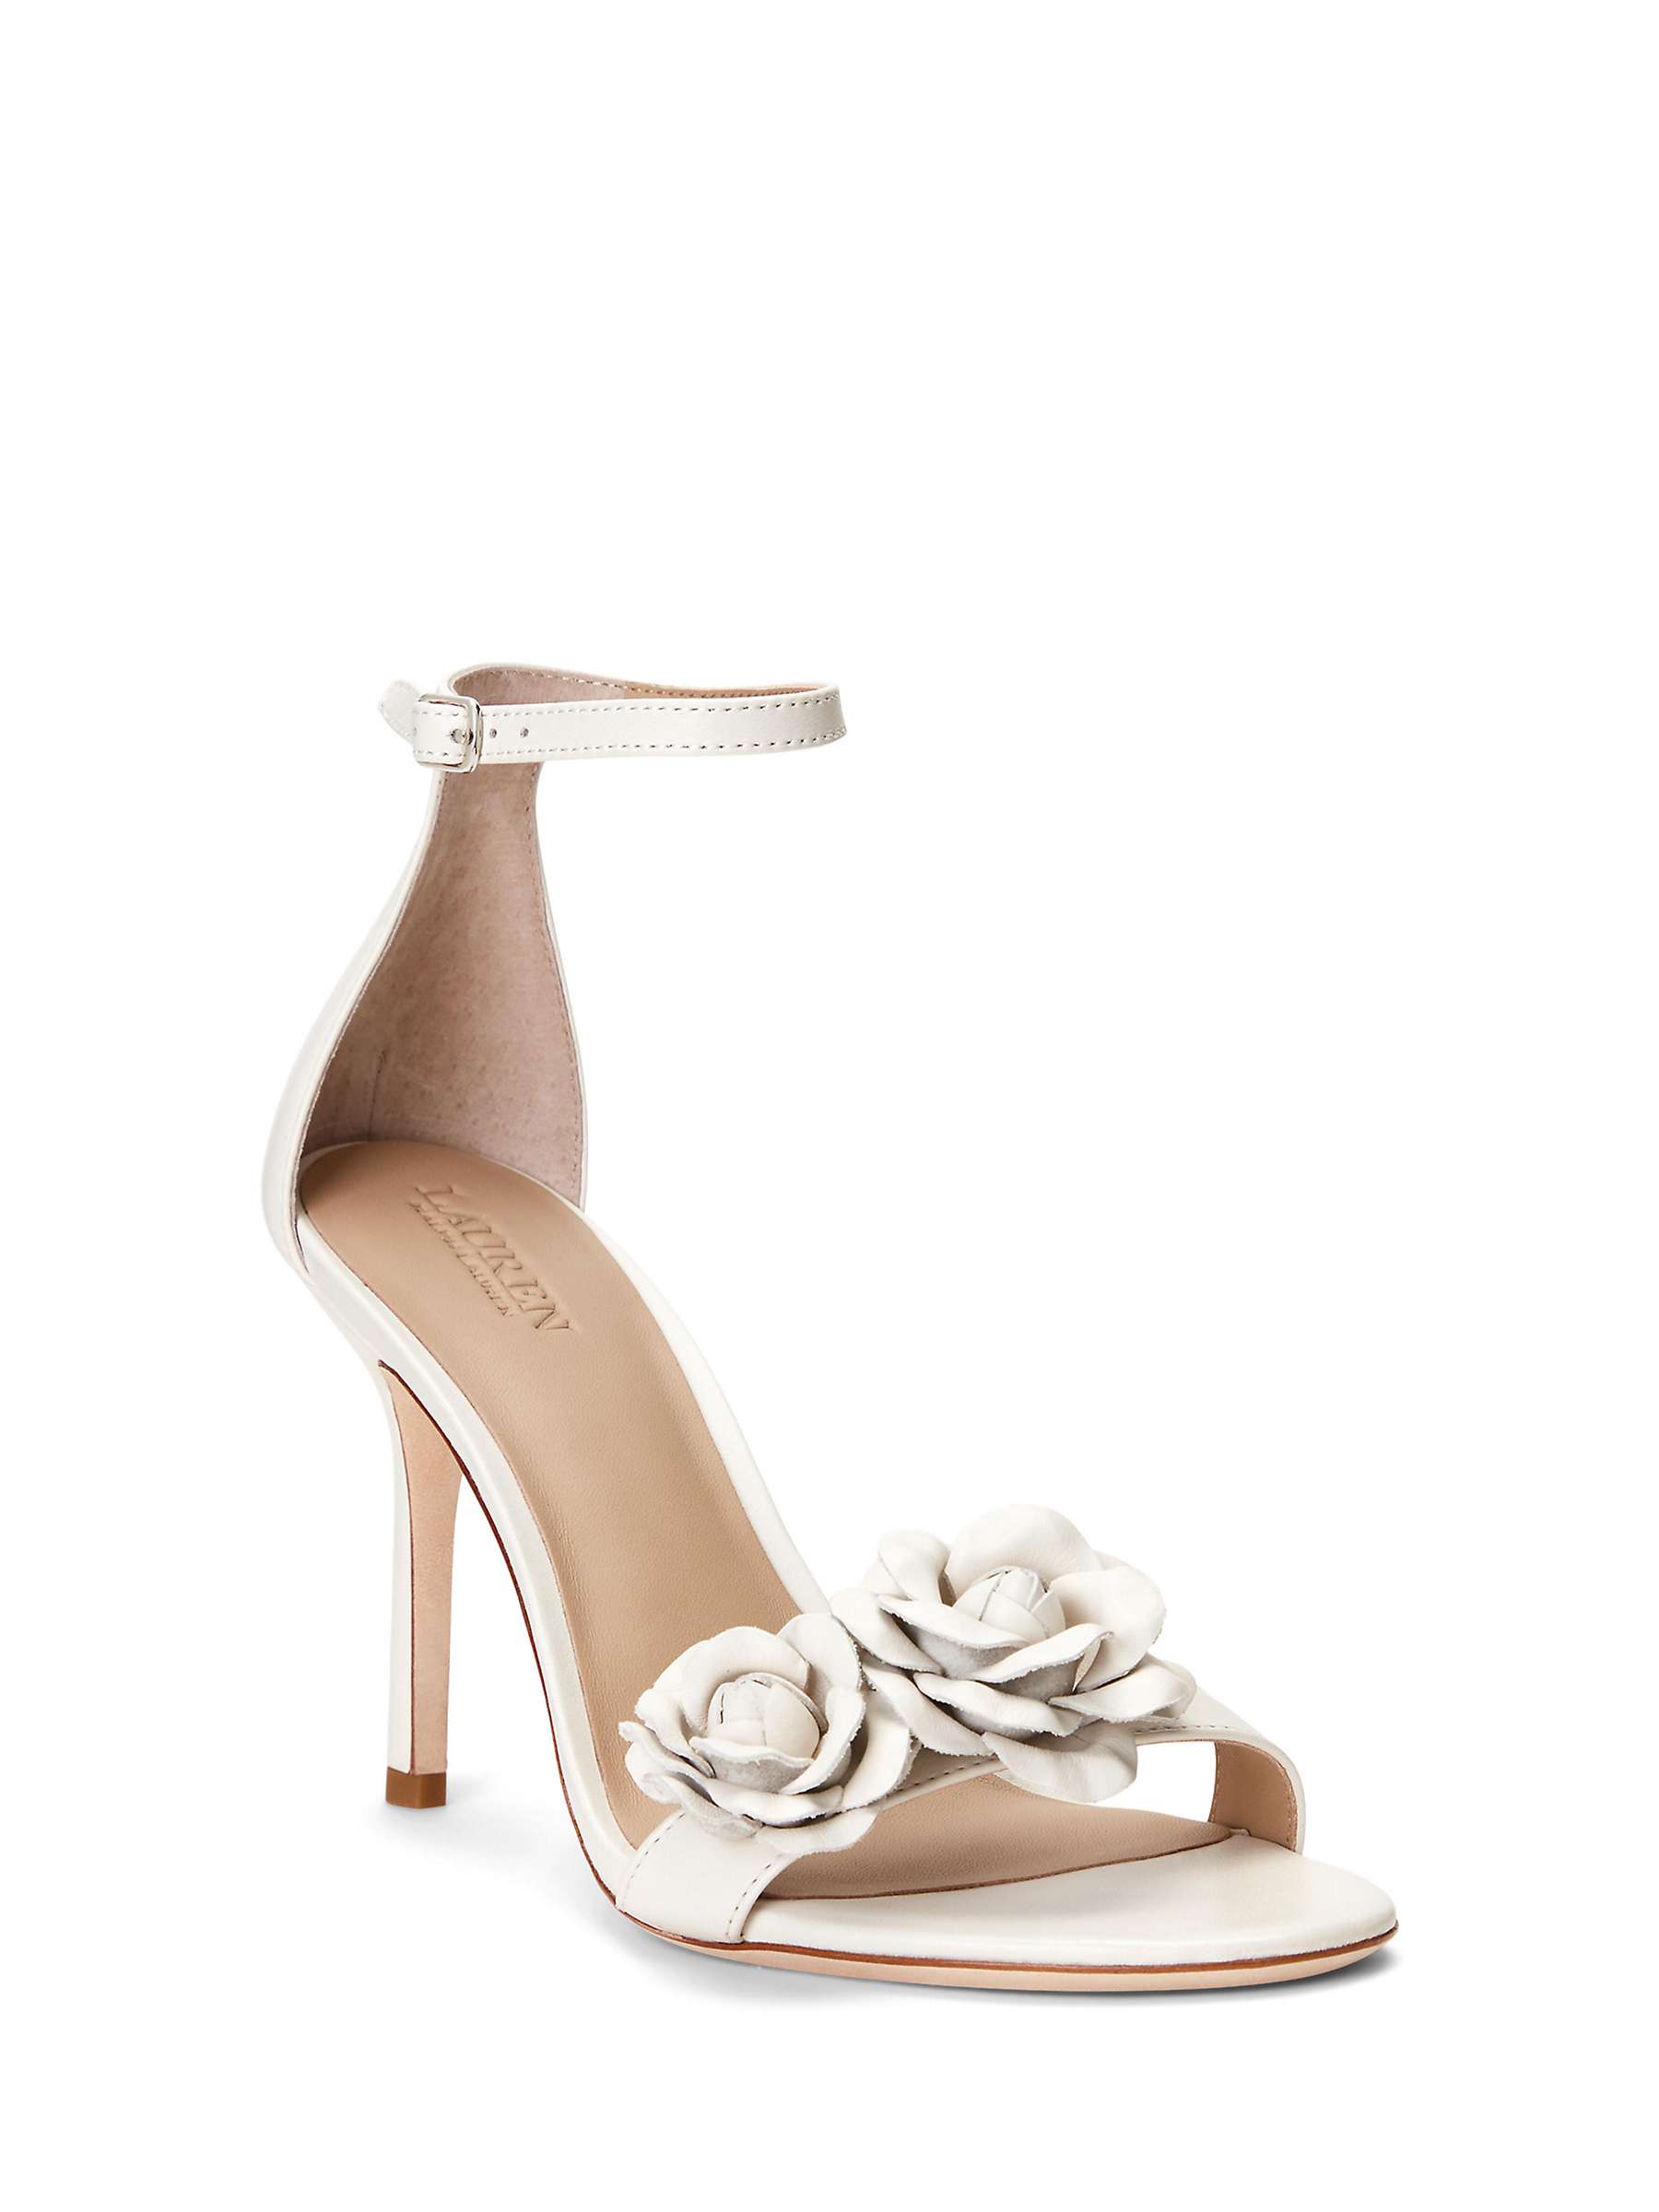 Buy Lauren Ralph Lauren Allie Leather Flower Stiletto Heeled Sandals, White Online at johnlewis.com